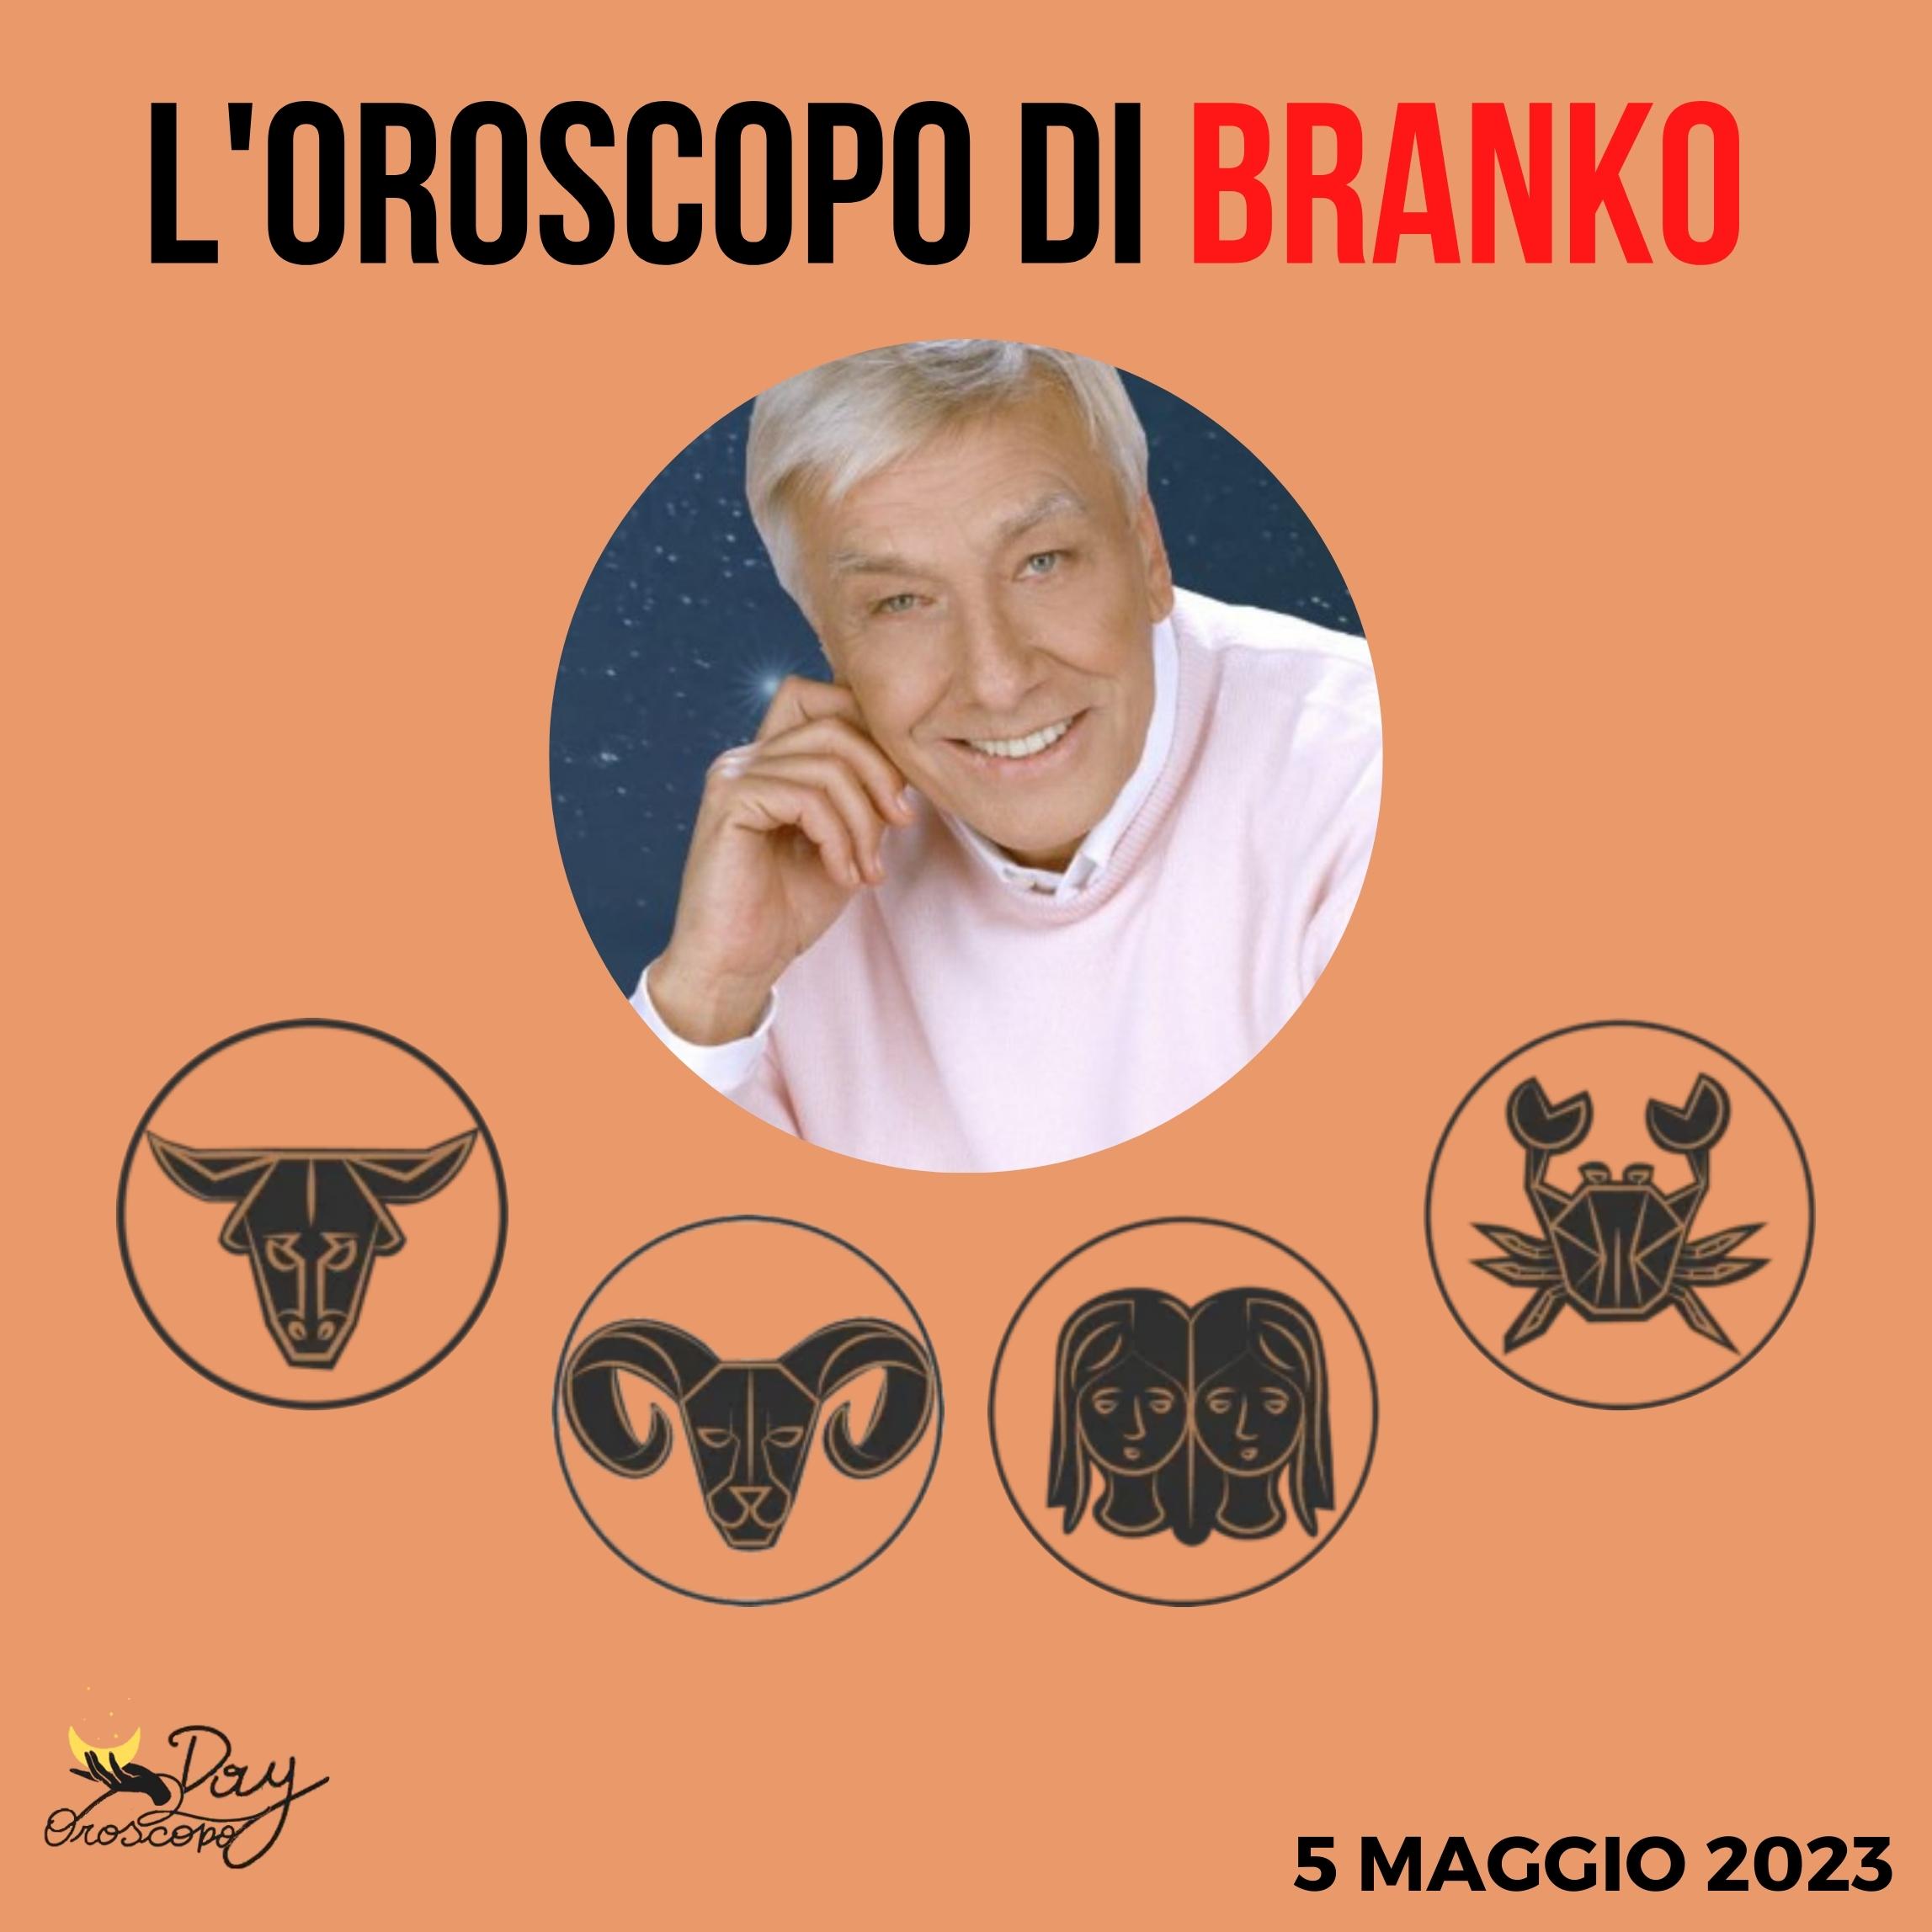 Oroscopo oggi domani Branko 5 maggio Toro Ariete Gemelli Cancro